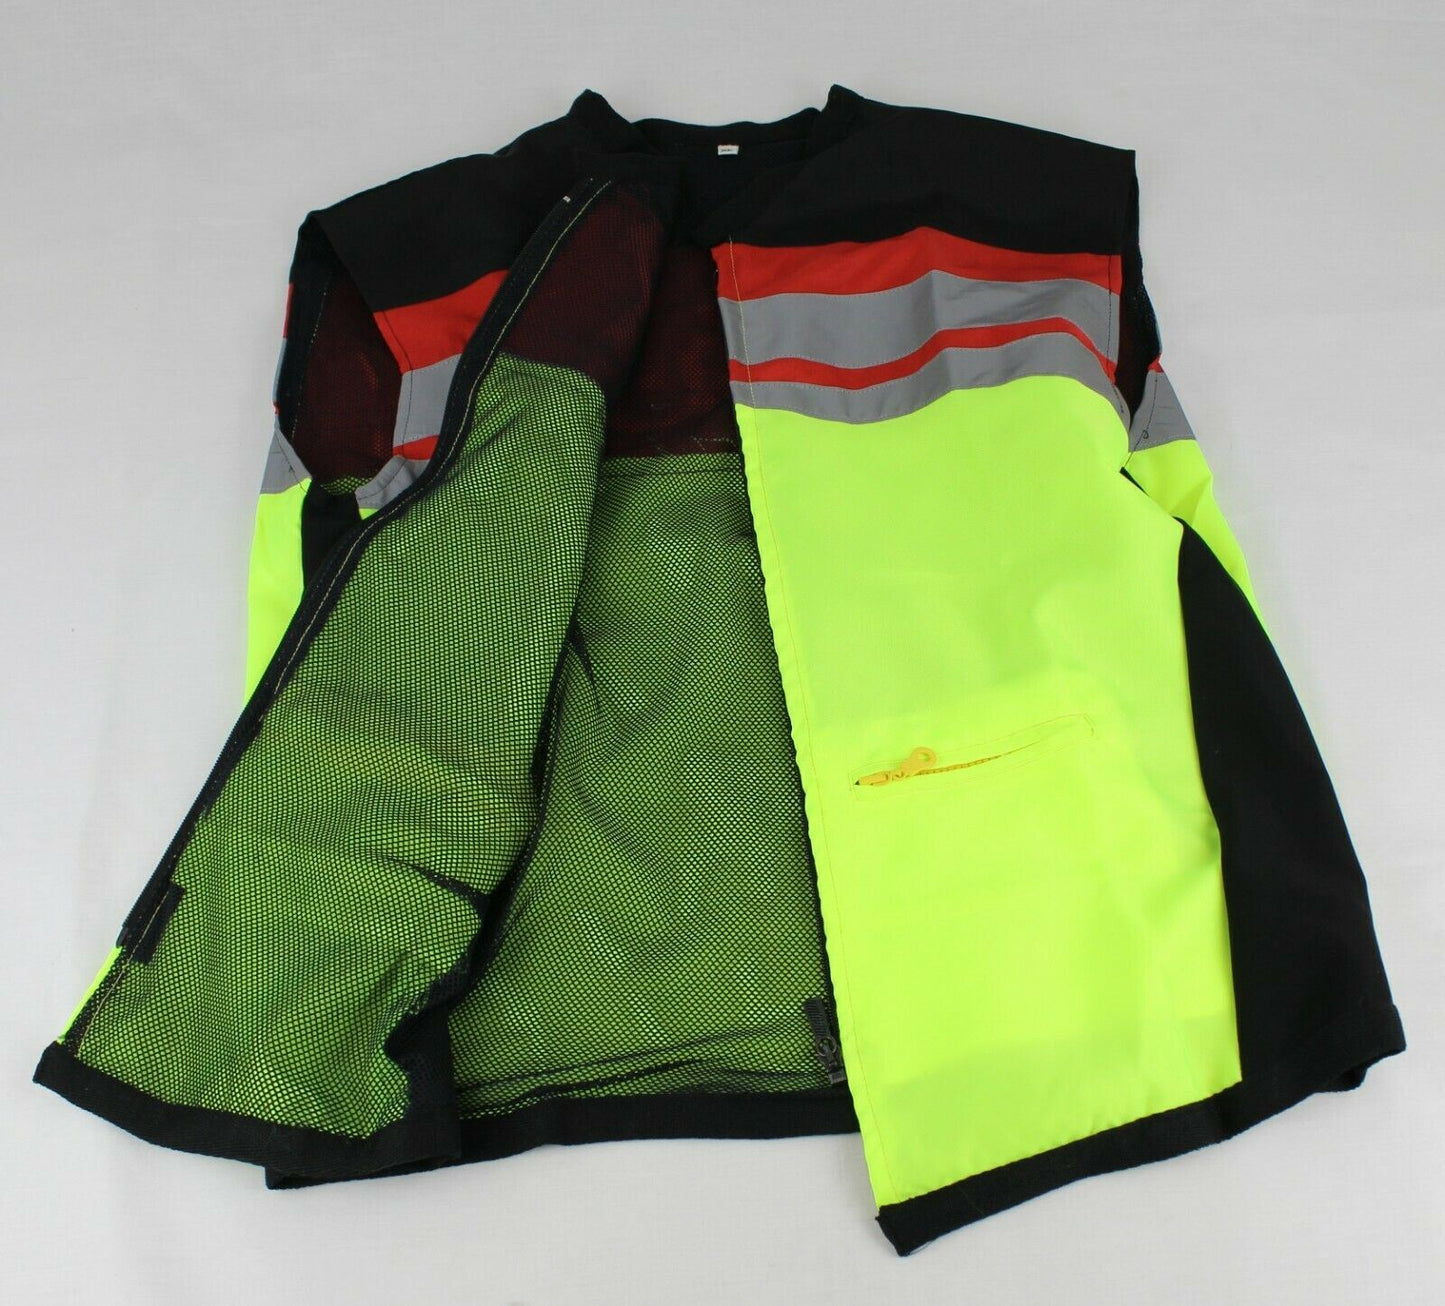 Motorcycle Hi Viz Reflective Jacket Safety Vest